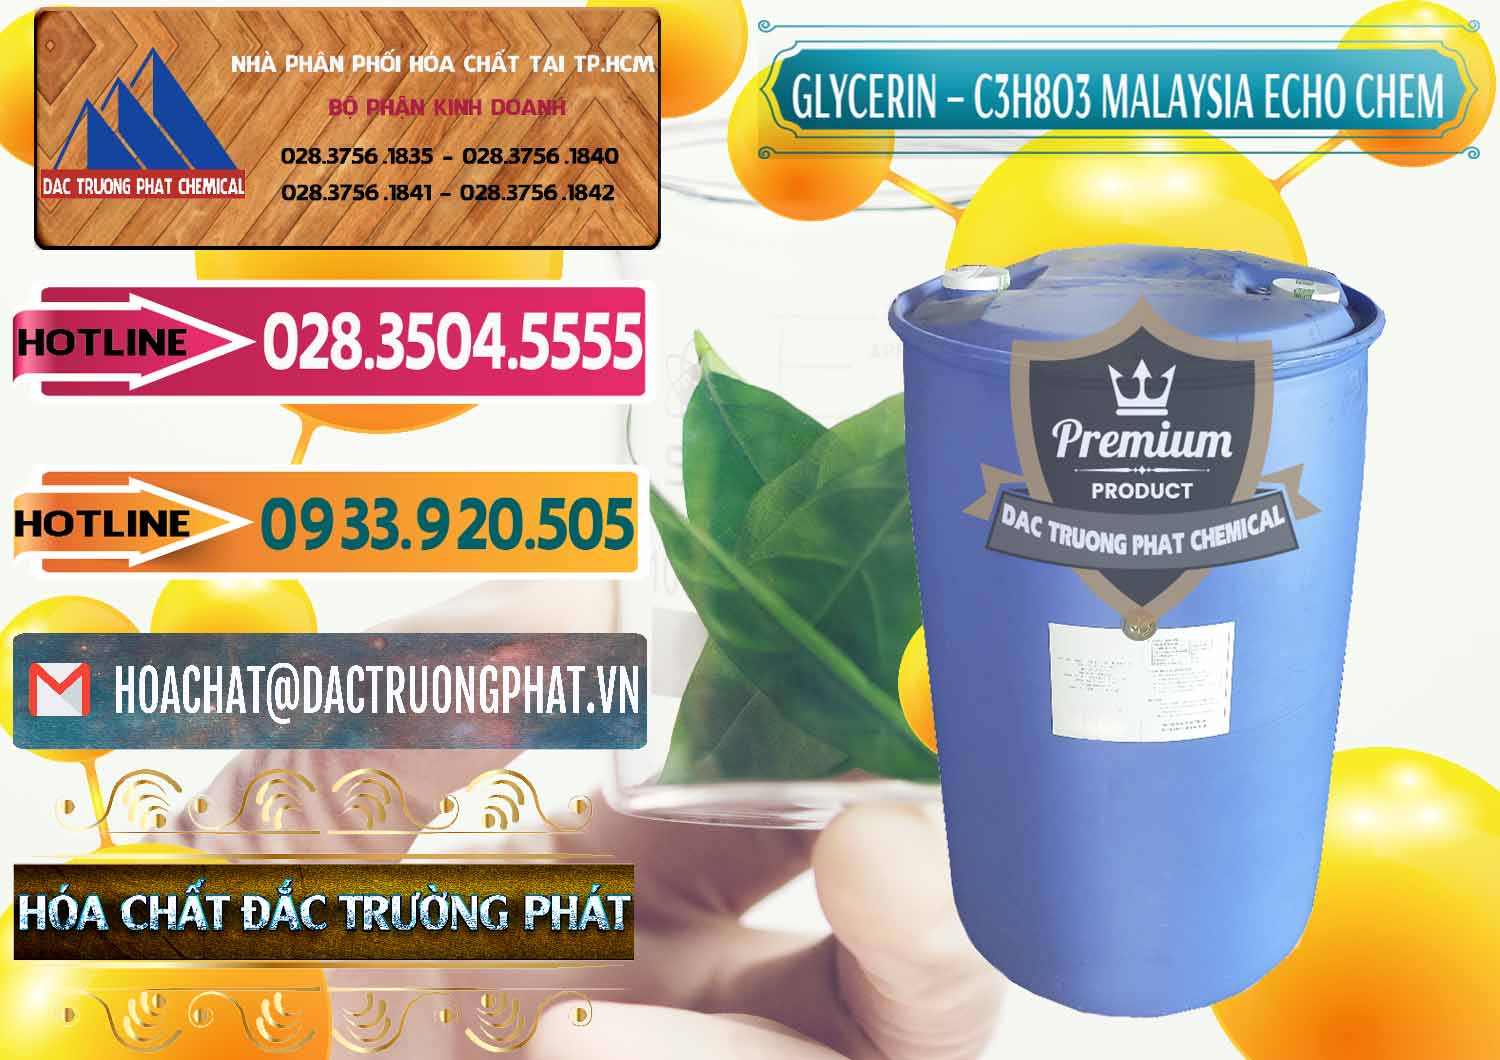 Đơn vị chuyên bán - cung cấp C3H8O3 - Glycerin 99.7% Echo Chem Malaysia - 0273 - Cung ứng - phân phối hóa chất tại TP.HCM - dactruongphat.vn